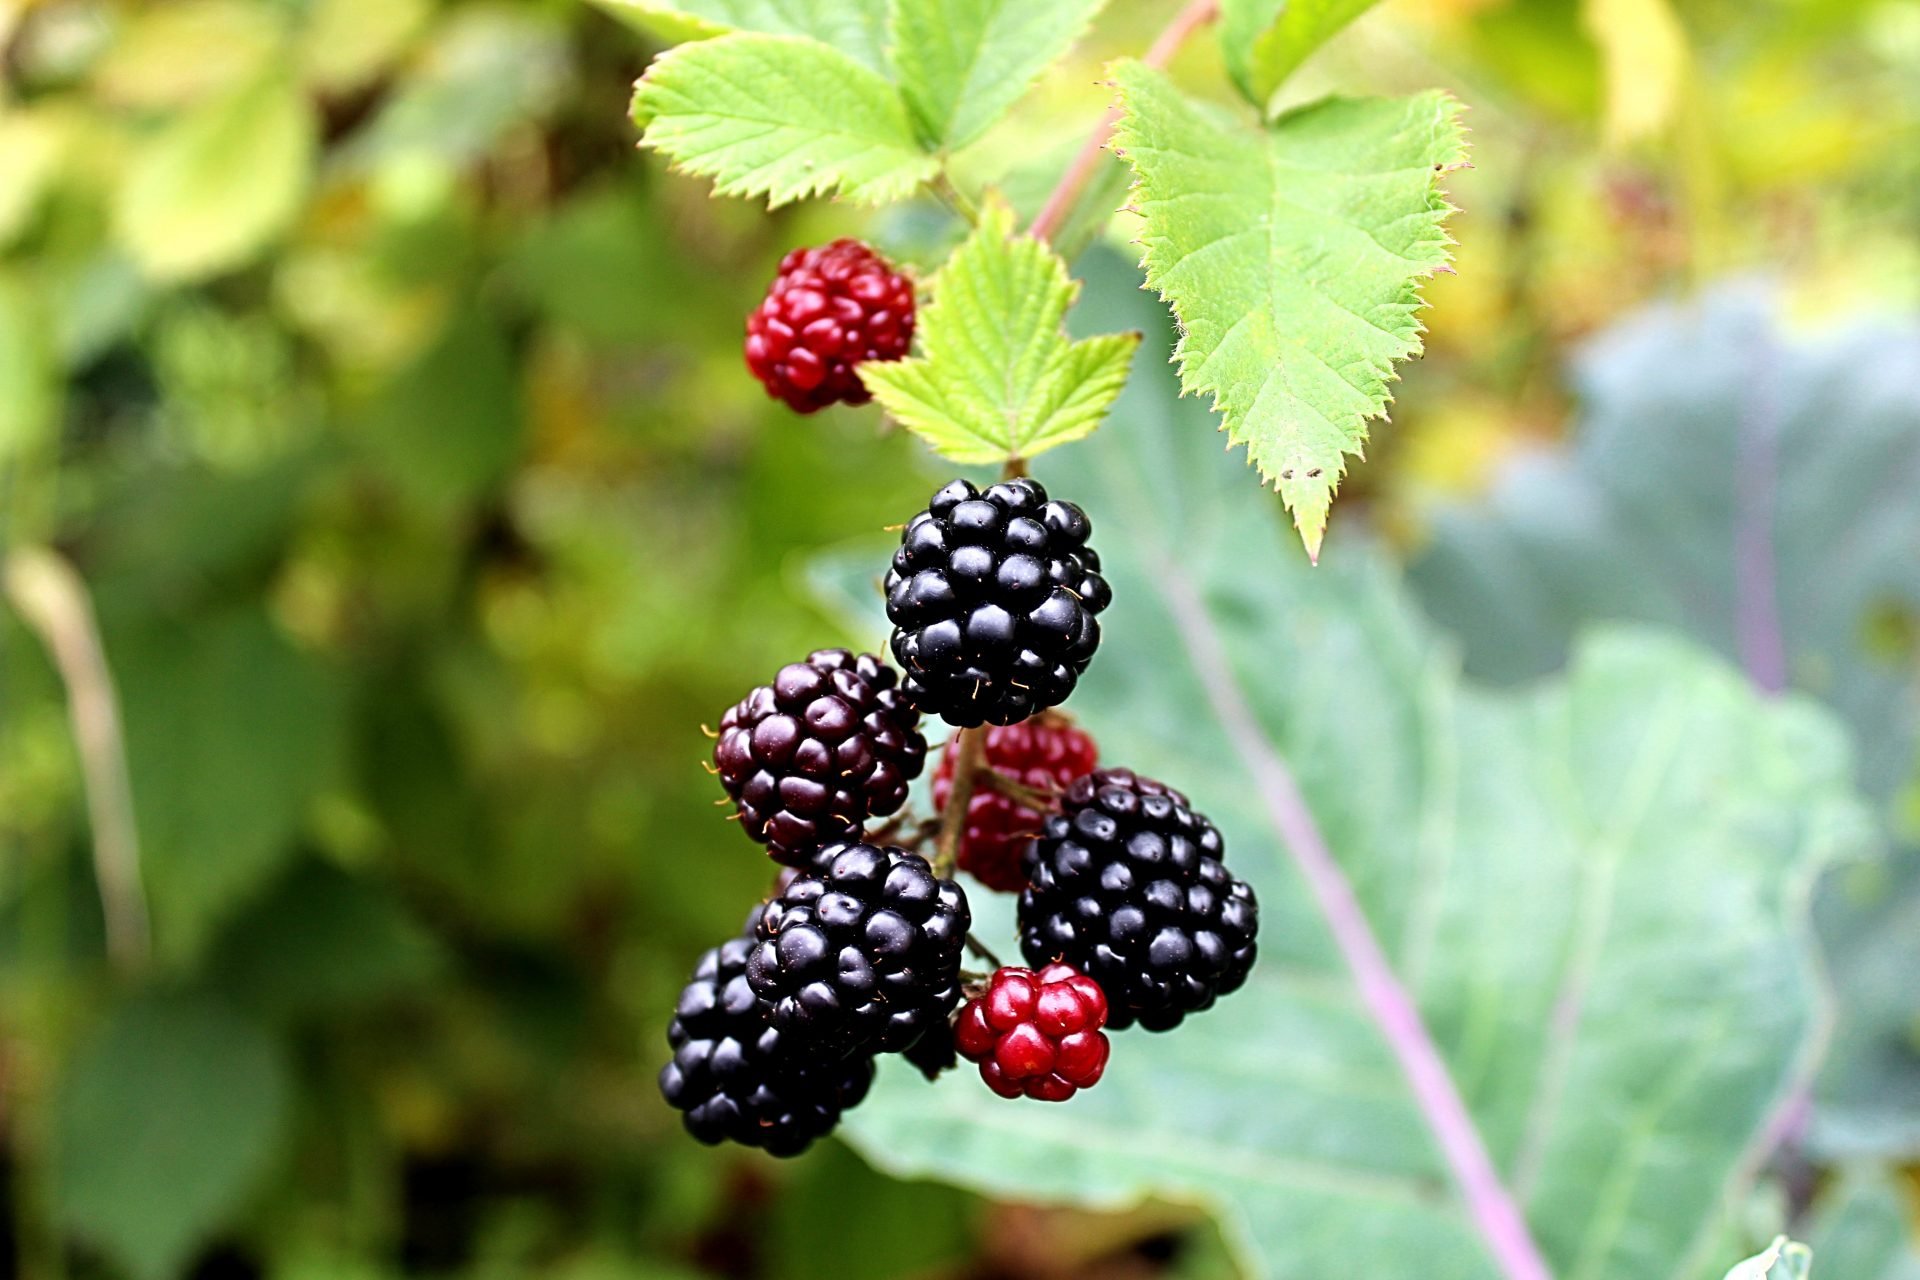 Real Food Encyclopedia - Blackberries, Raspberries, Brambles